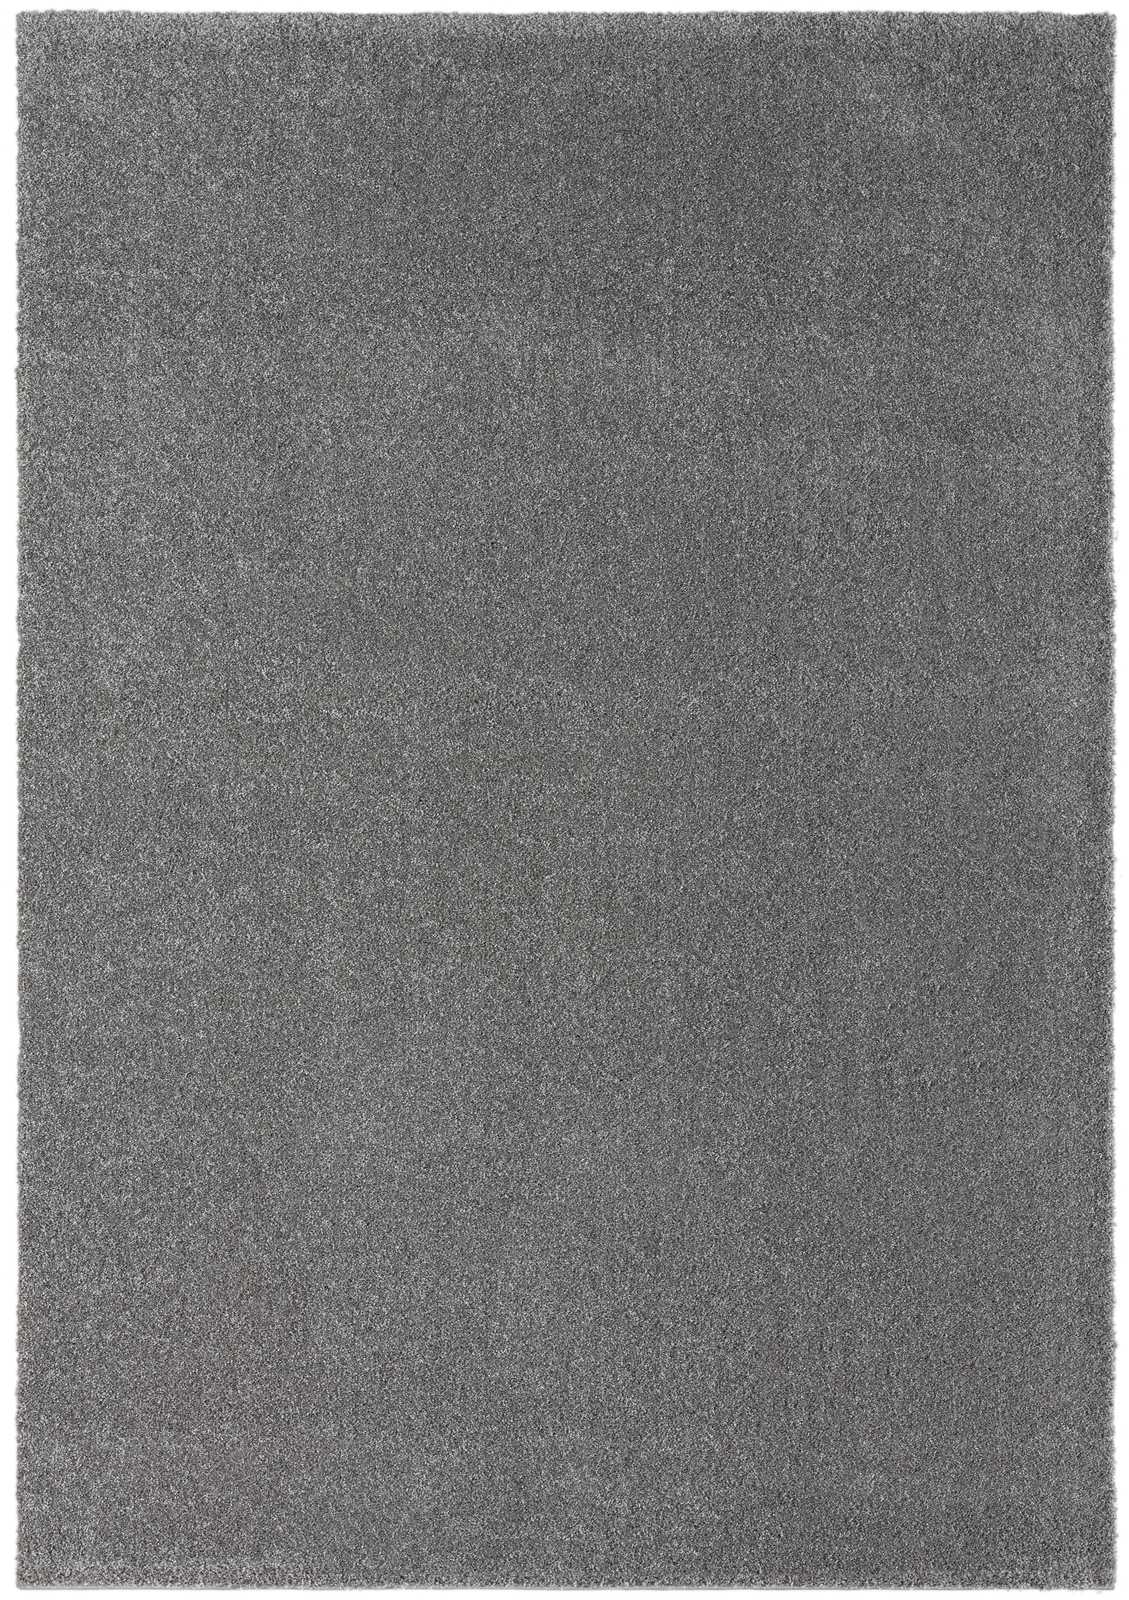             Tapis moelleux à poils courts gris - 170 x 120 cm
        